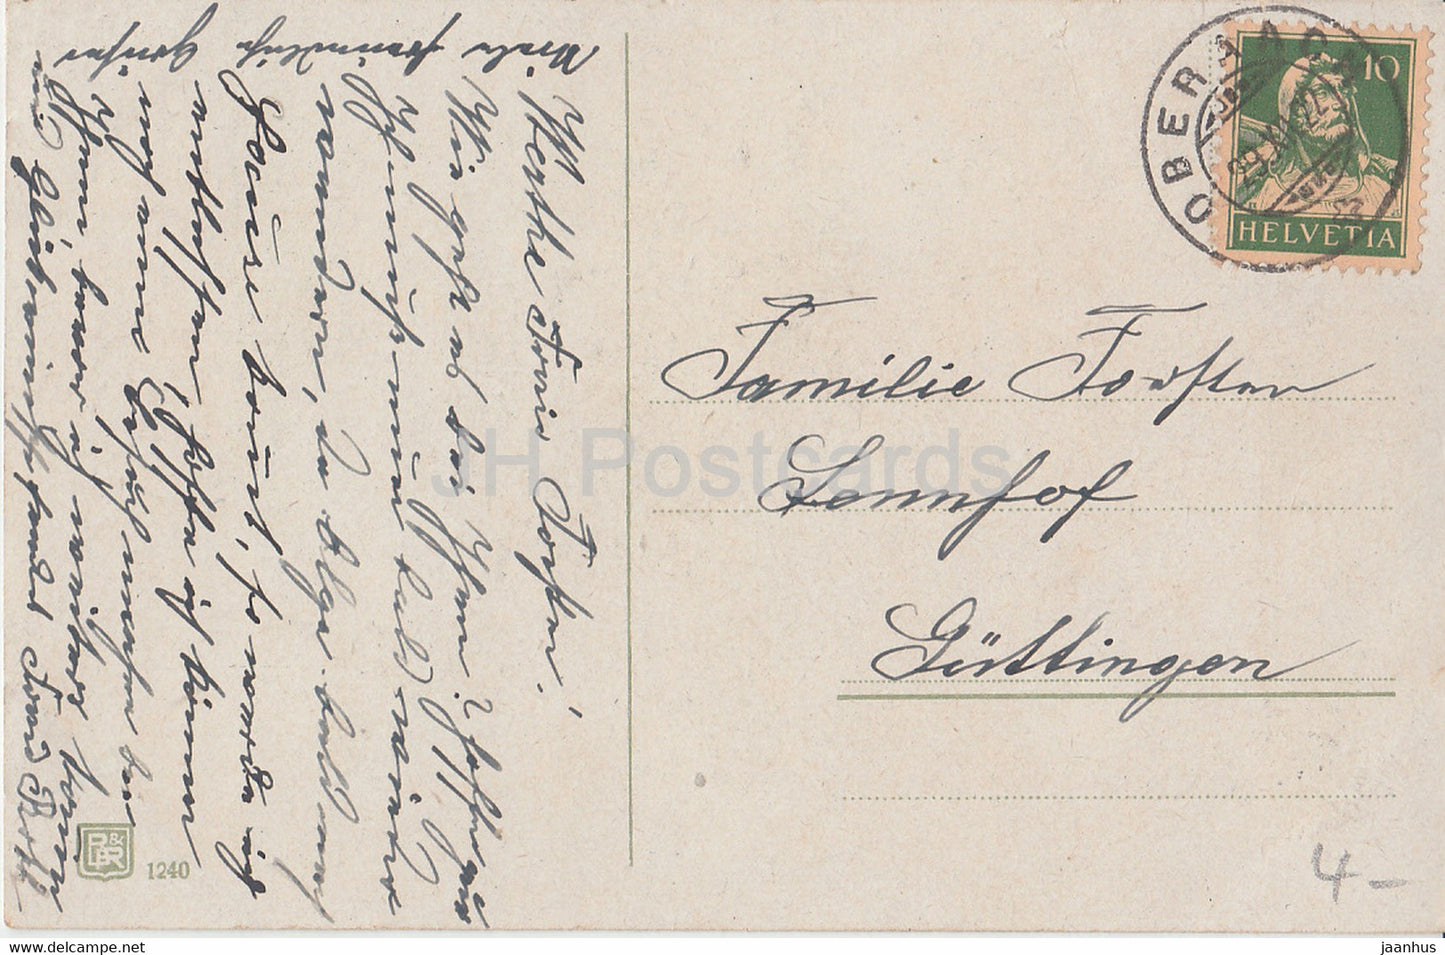 Neujahrsgrußkarte - Herzlichen Glückwunsch zum Neuen Jahre - Blumenkorb - alte Postkarte - 1922 - Deutschland - gebraucht